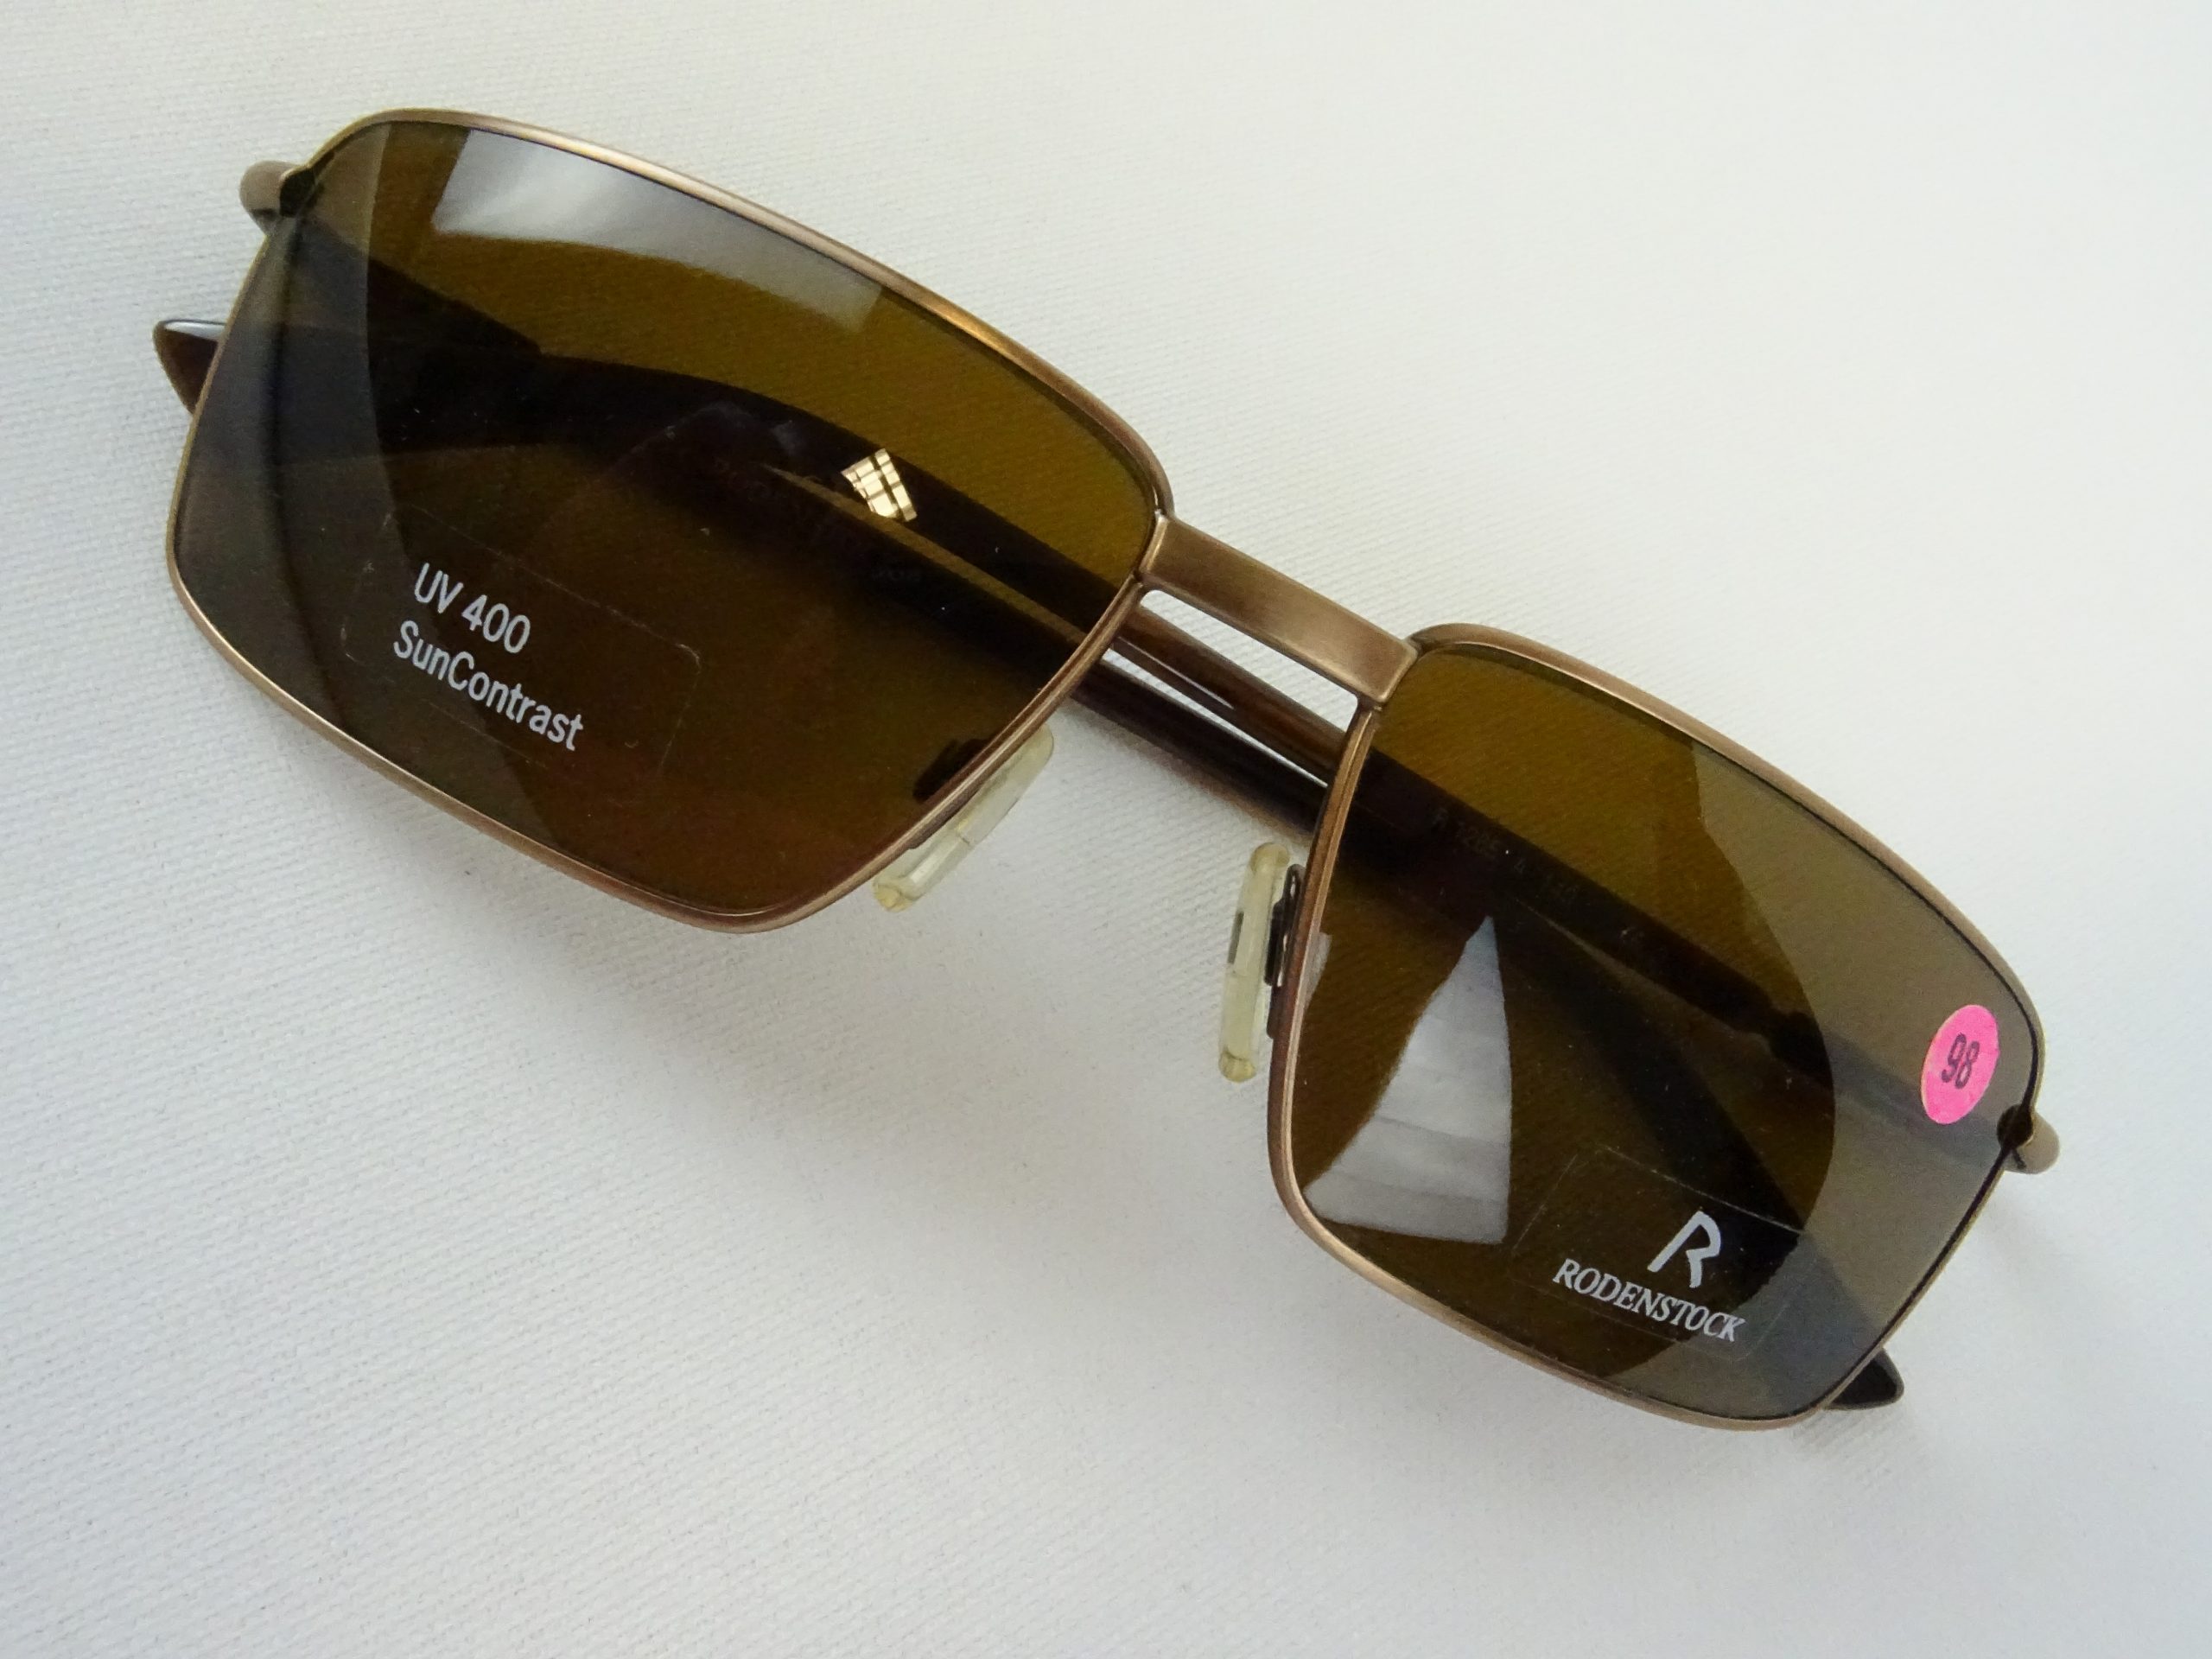 RODENSTOCK Herren Sonnenbrille SUN Contrast Vintage Brillen M Welt Gr. Metallfassung Form sportlich curved eckige – Gläser braun UV 400